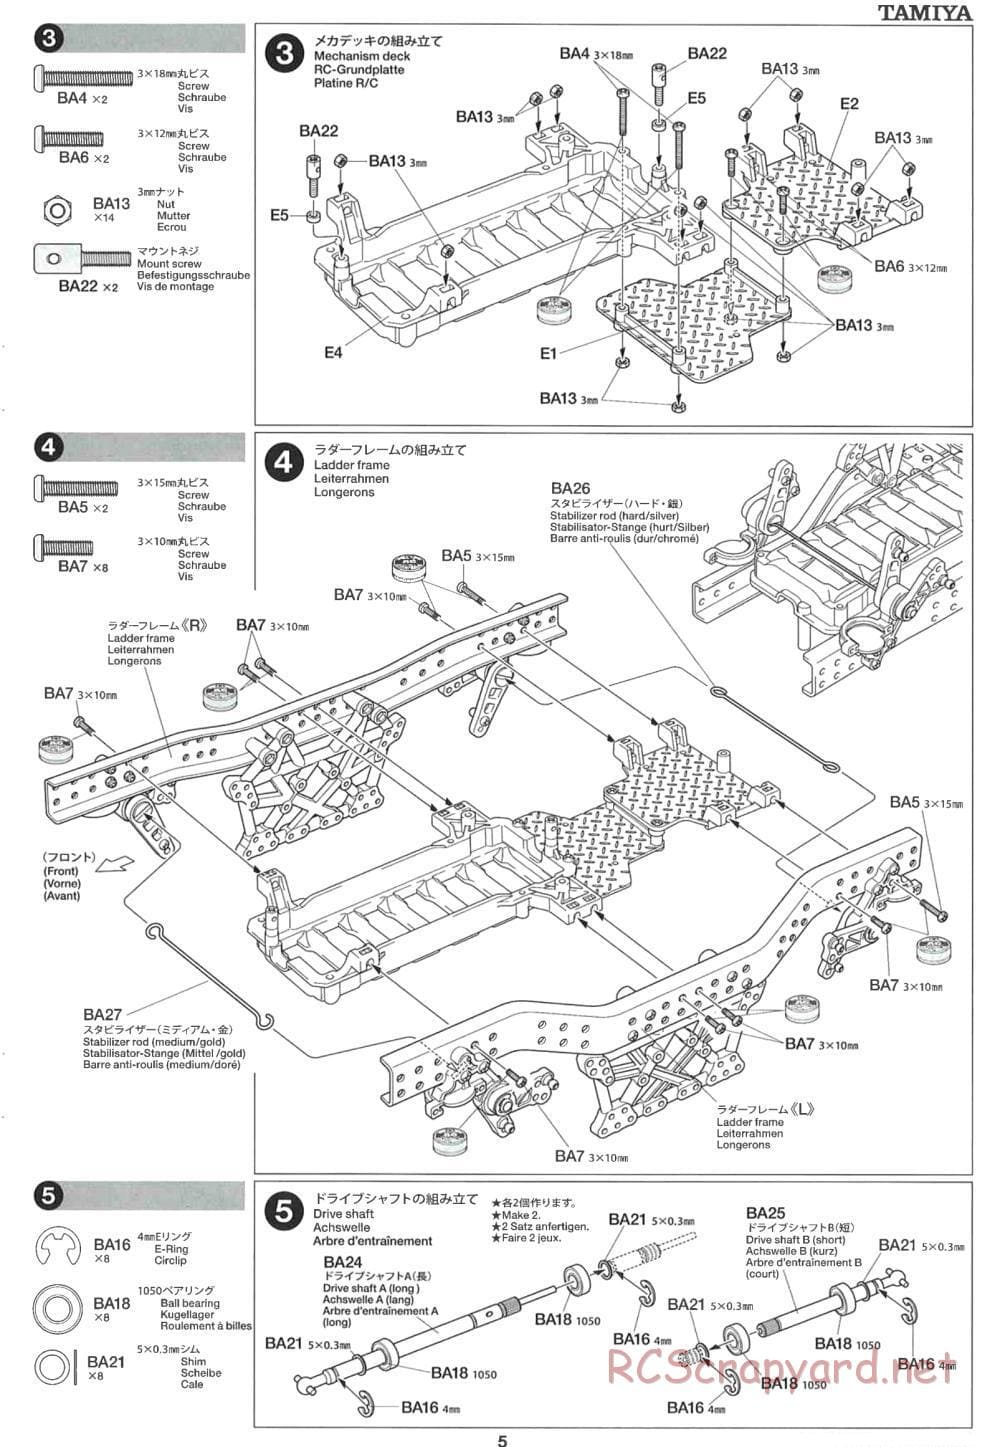 Tamiya - CR-01 Chassis - Manual - Page 5